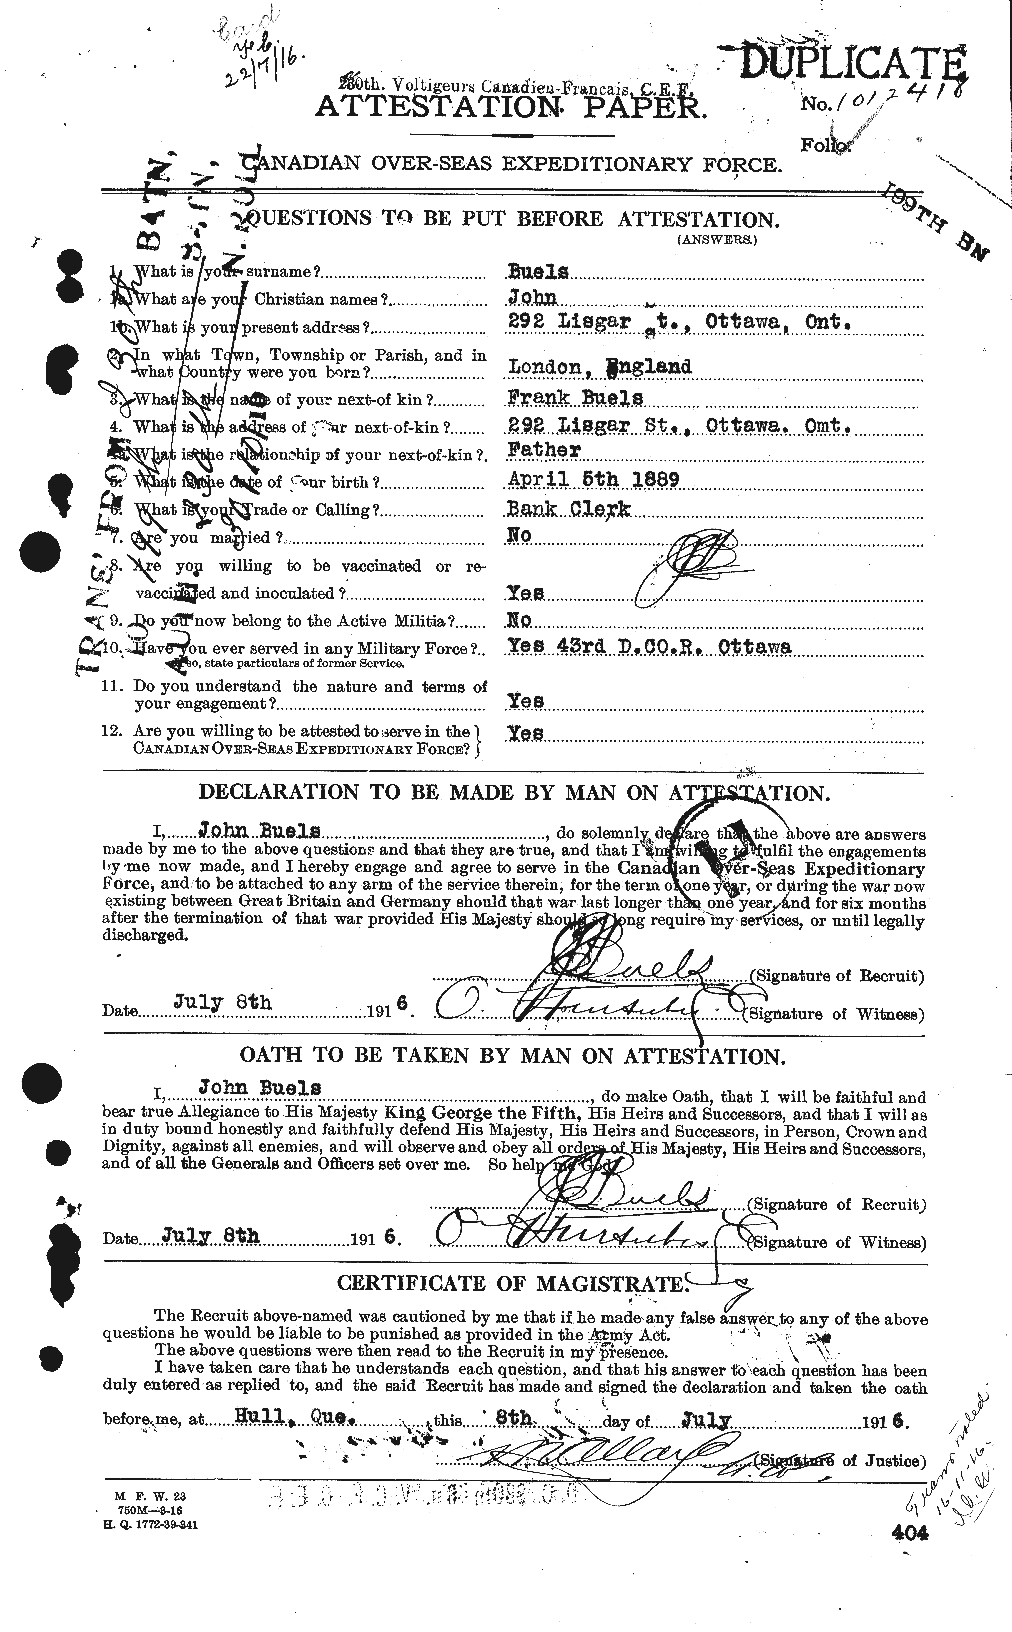 Dossiers du Personnel de la Première Guerre mondiale - CEC 271421a